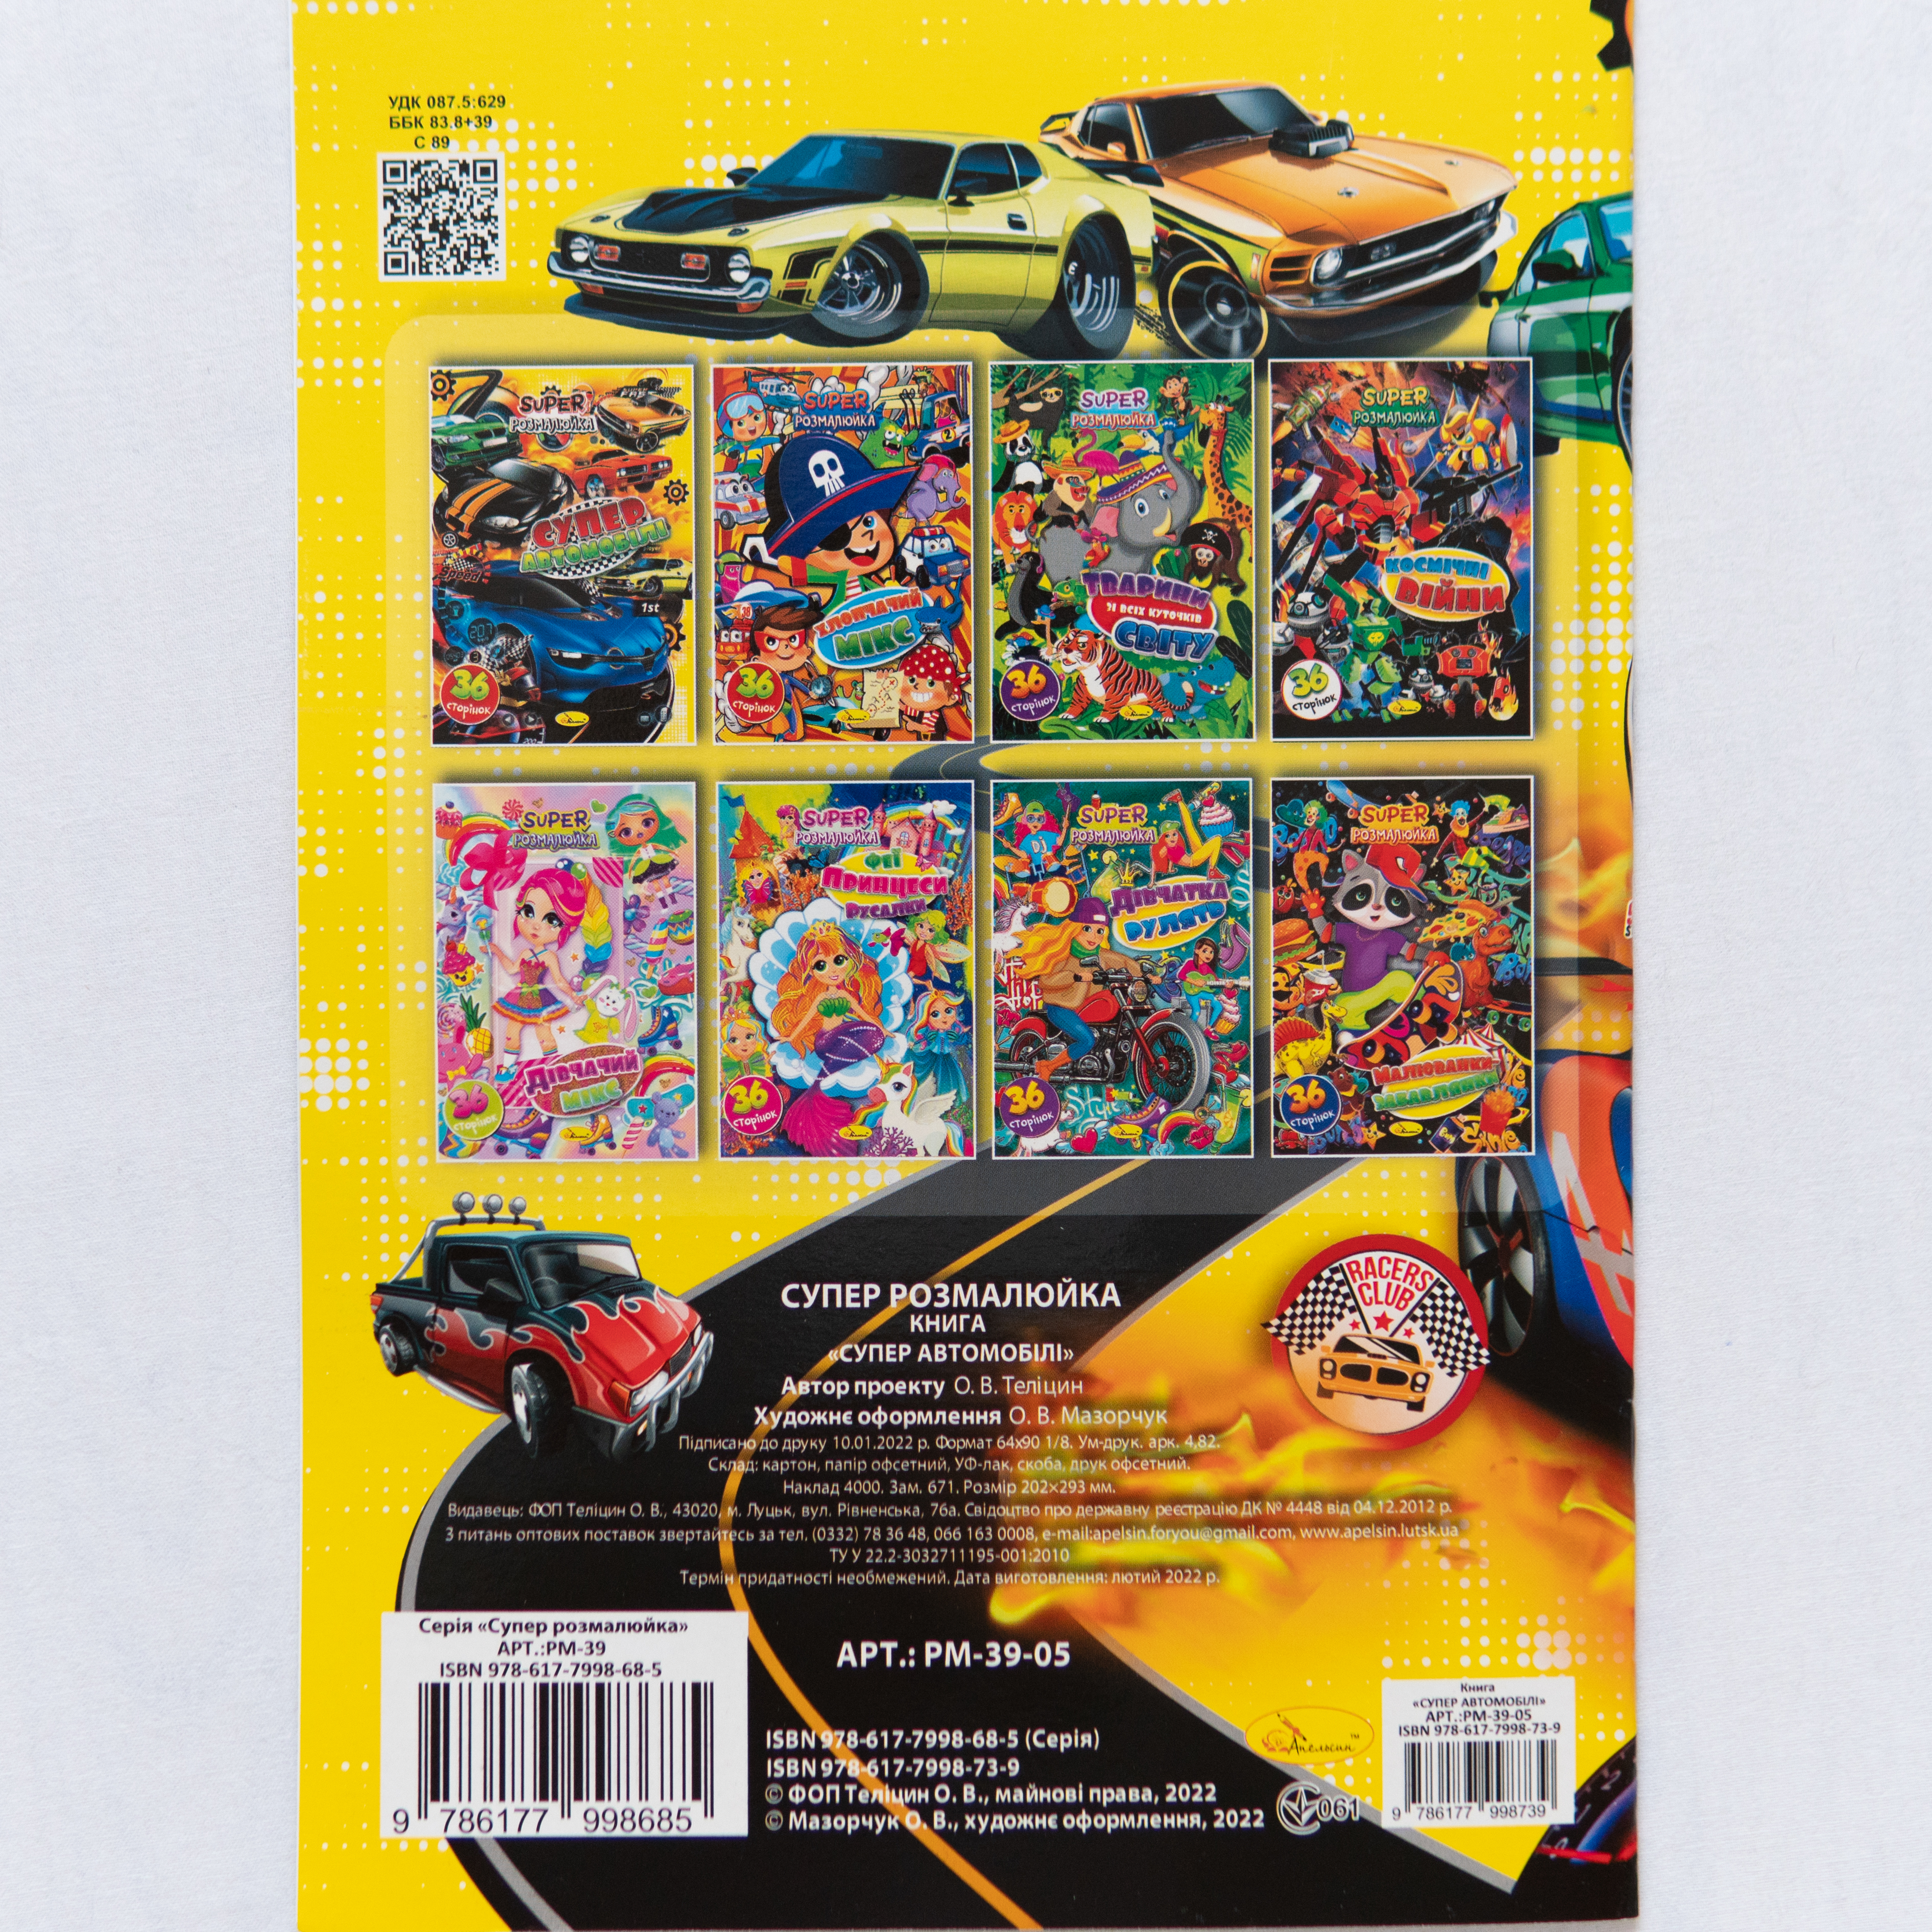 Malbuch für Kinder Farben Kreativität ukrainische Sprache Ausmalbild Super-Autos/Malbuch für Kinder Farben Kreativität ukrainische Sprache Ausmalbild Super-Autos